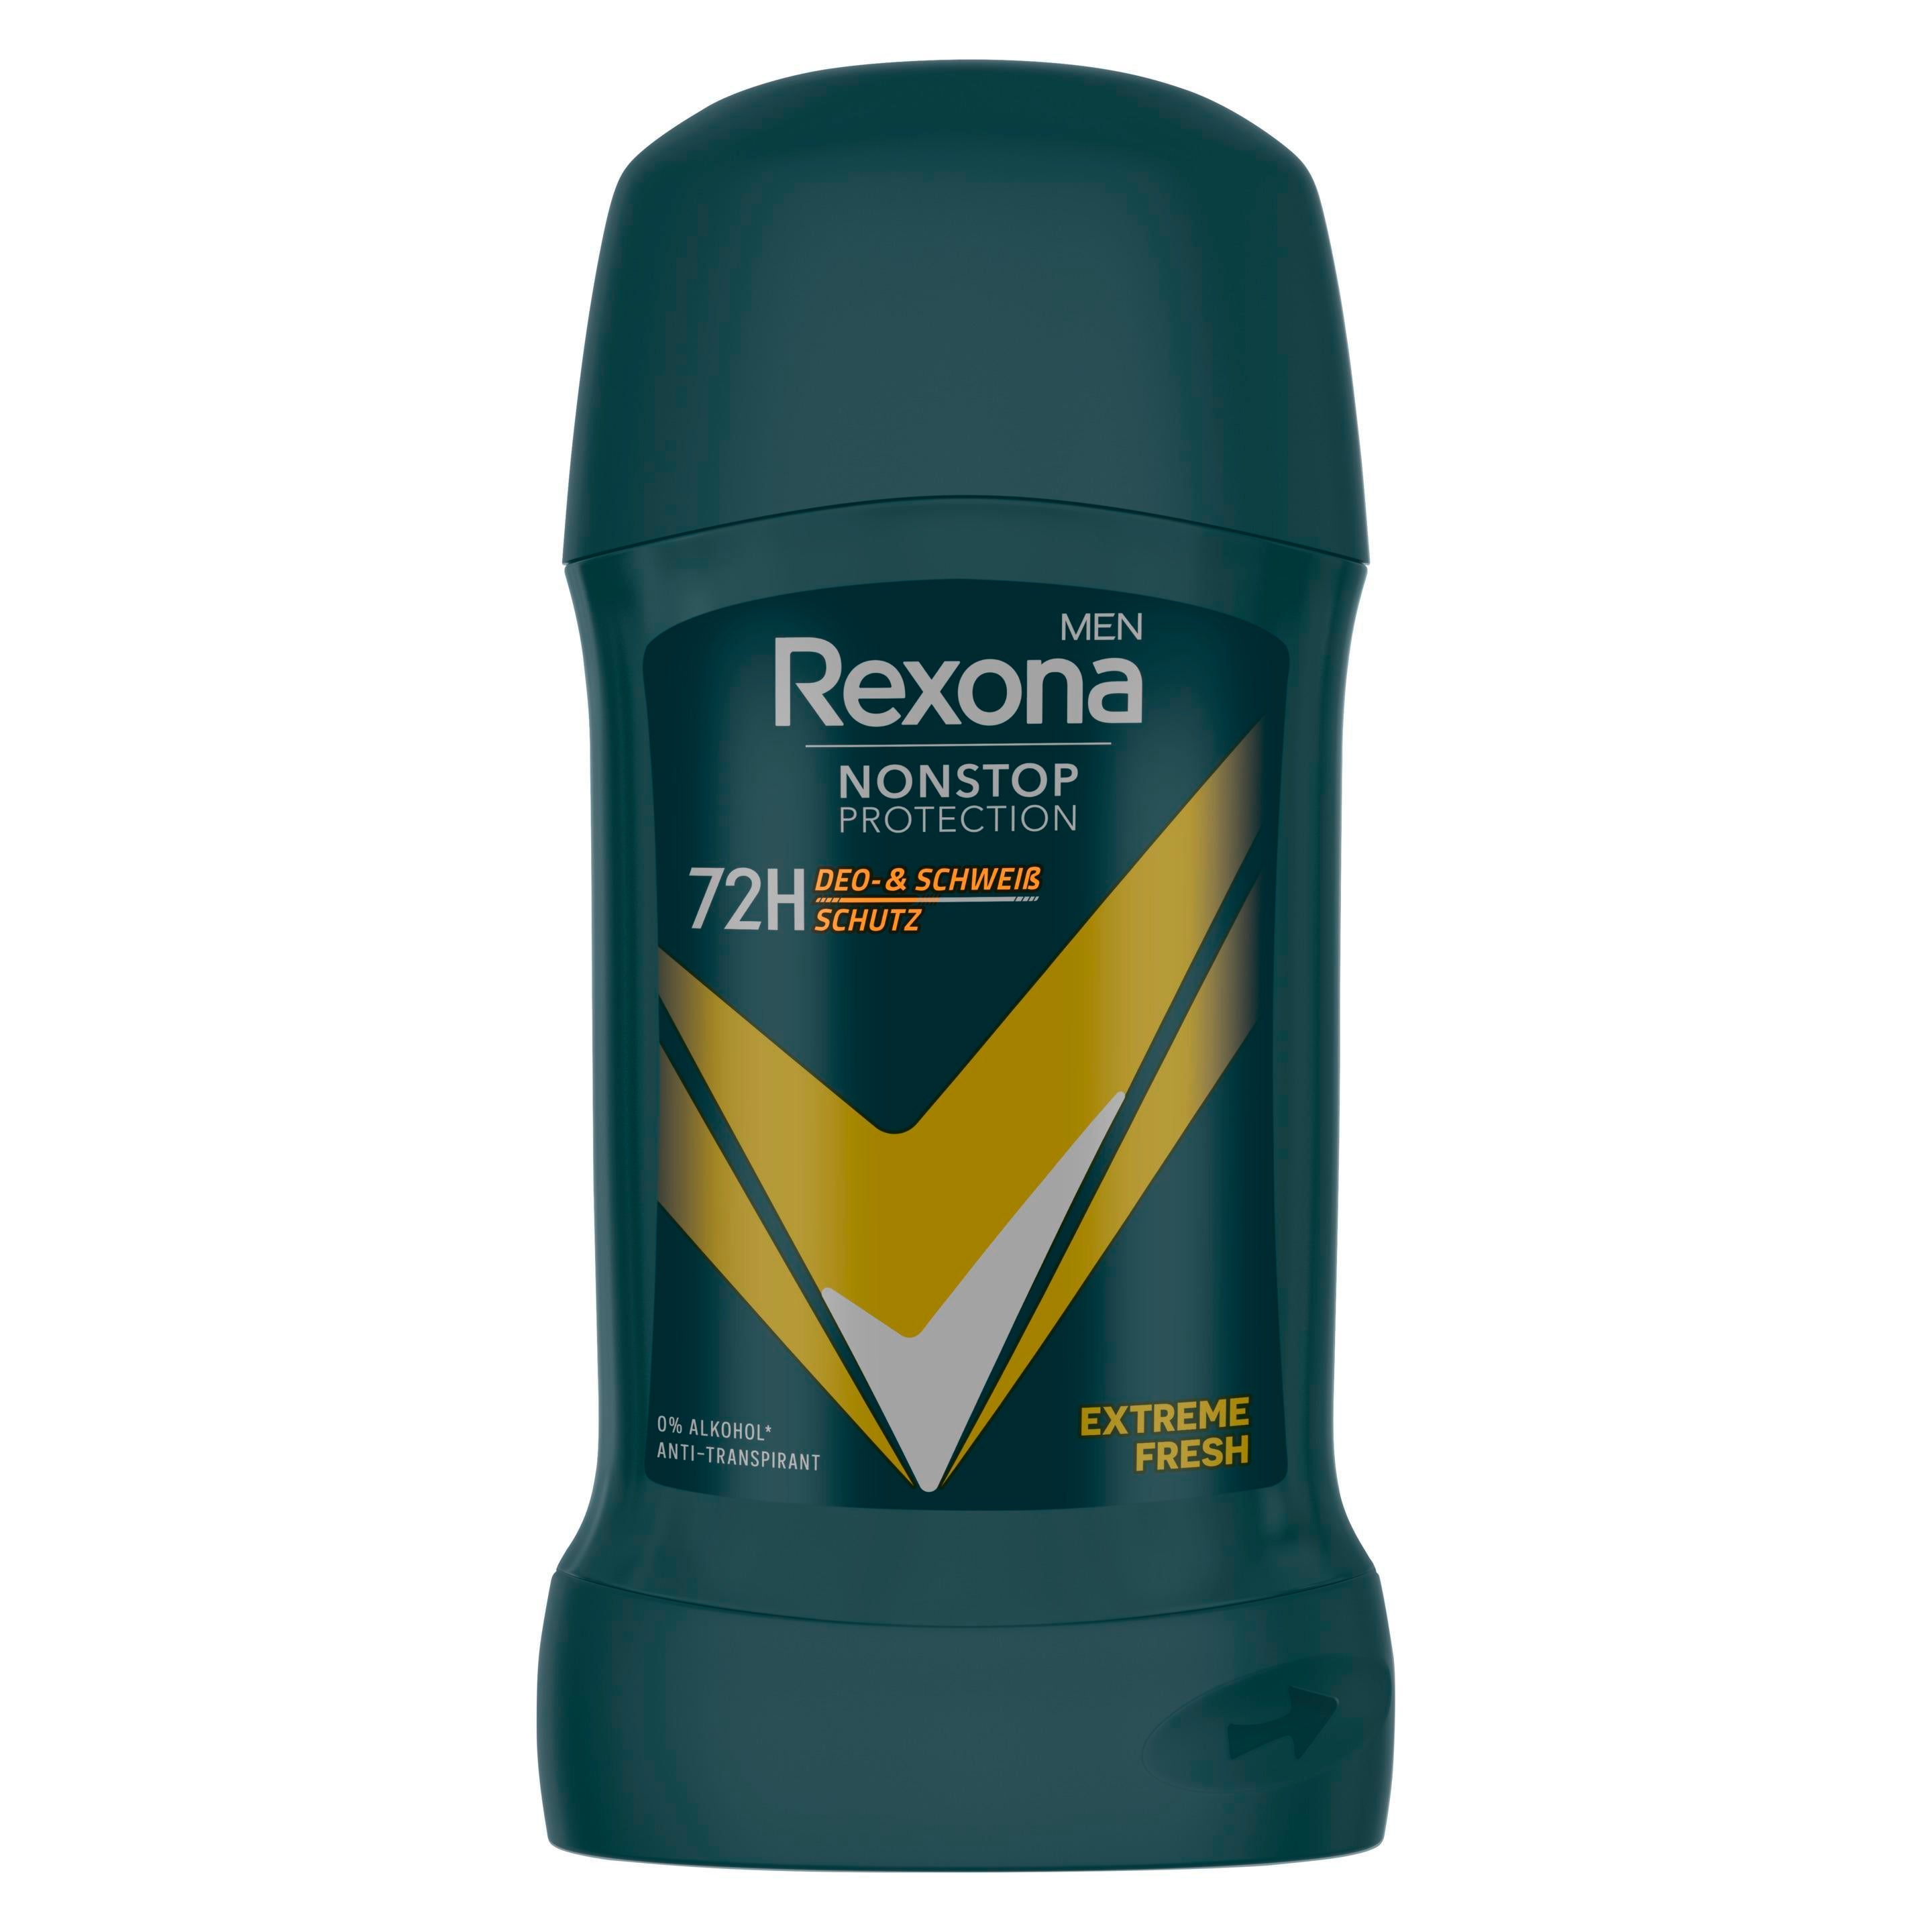 Rexona Men Nonstop Protection Deo Stick Extreme Fresh Anti Transpirant mit 72 Stunden Schutz vor Schweiß und Körpergeruch 50 ml